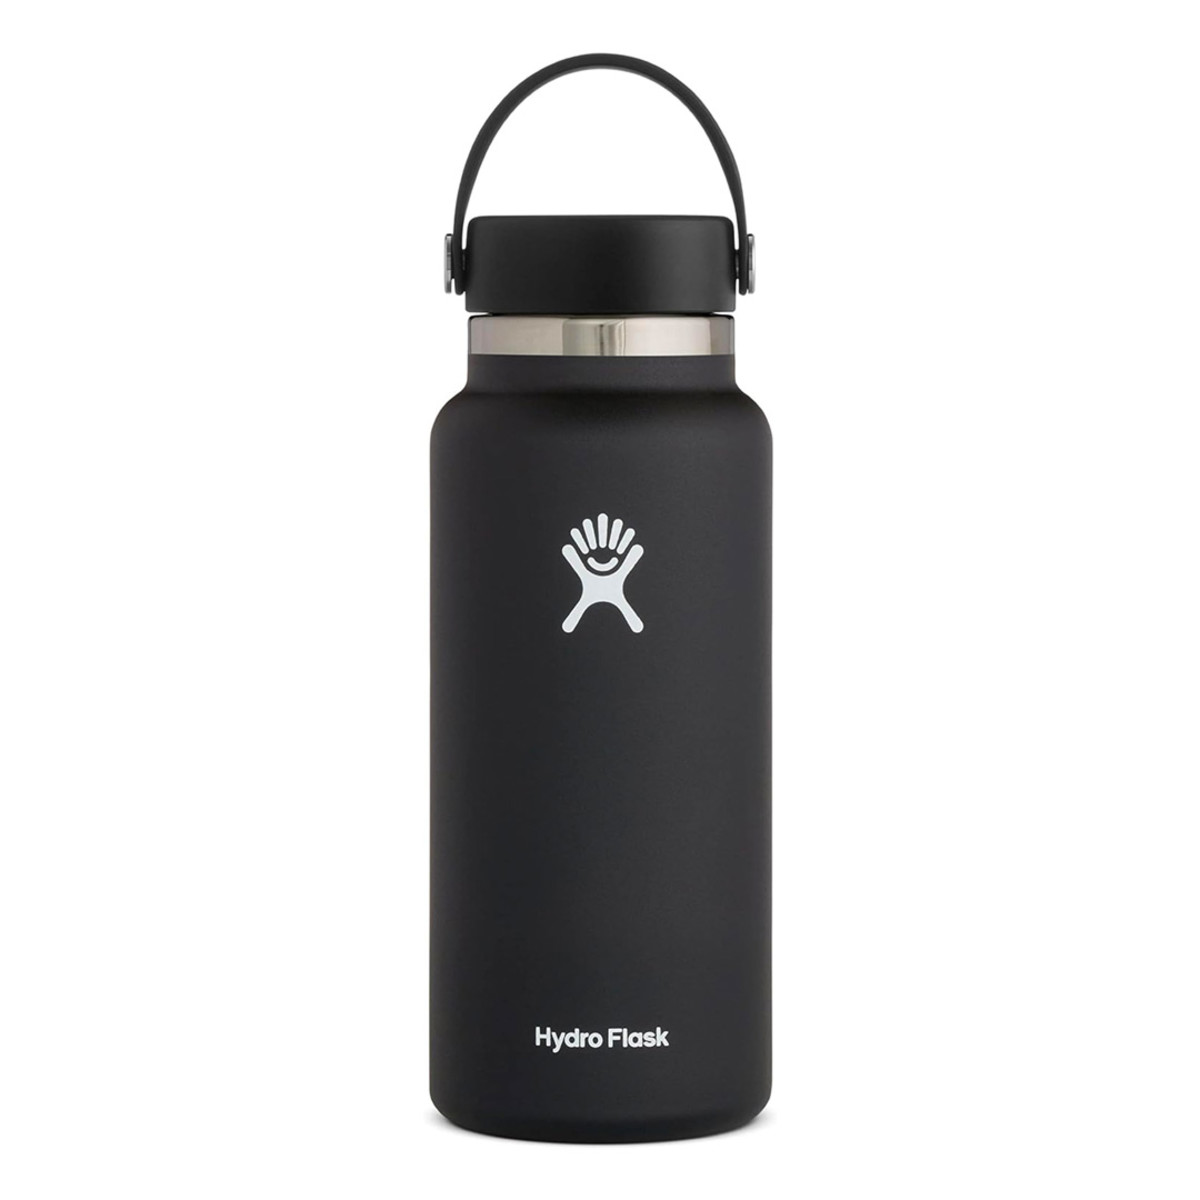 https://www.mensjournal.com/.image/t_share/MjAyNTE1MDE3NzcyMzExNjIw/hydro-flask-stainless-steel-wide-mouth-water-bottle-with-flex-cap.jpg